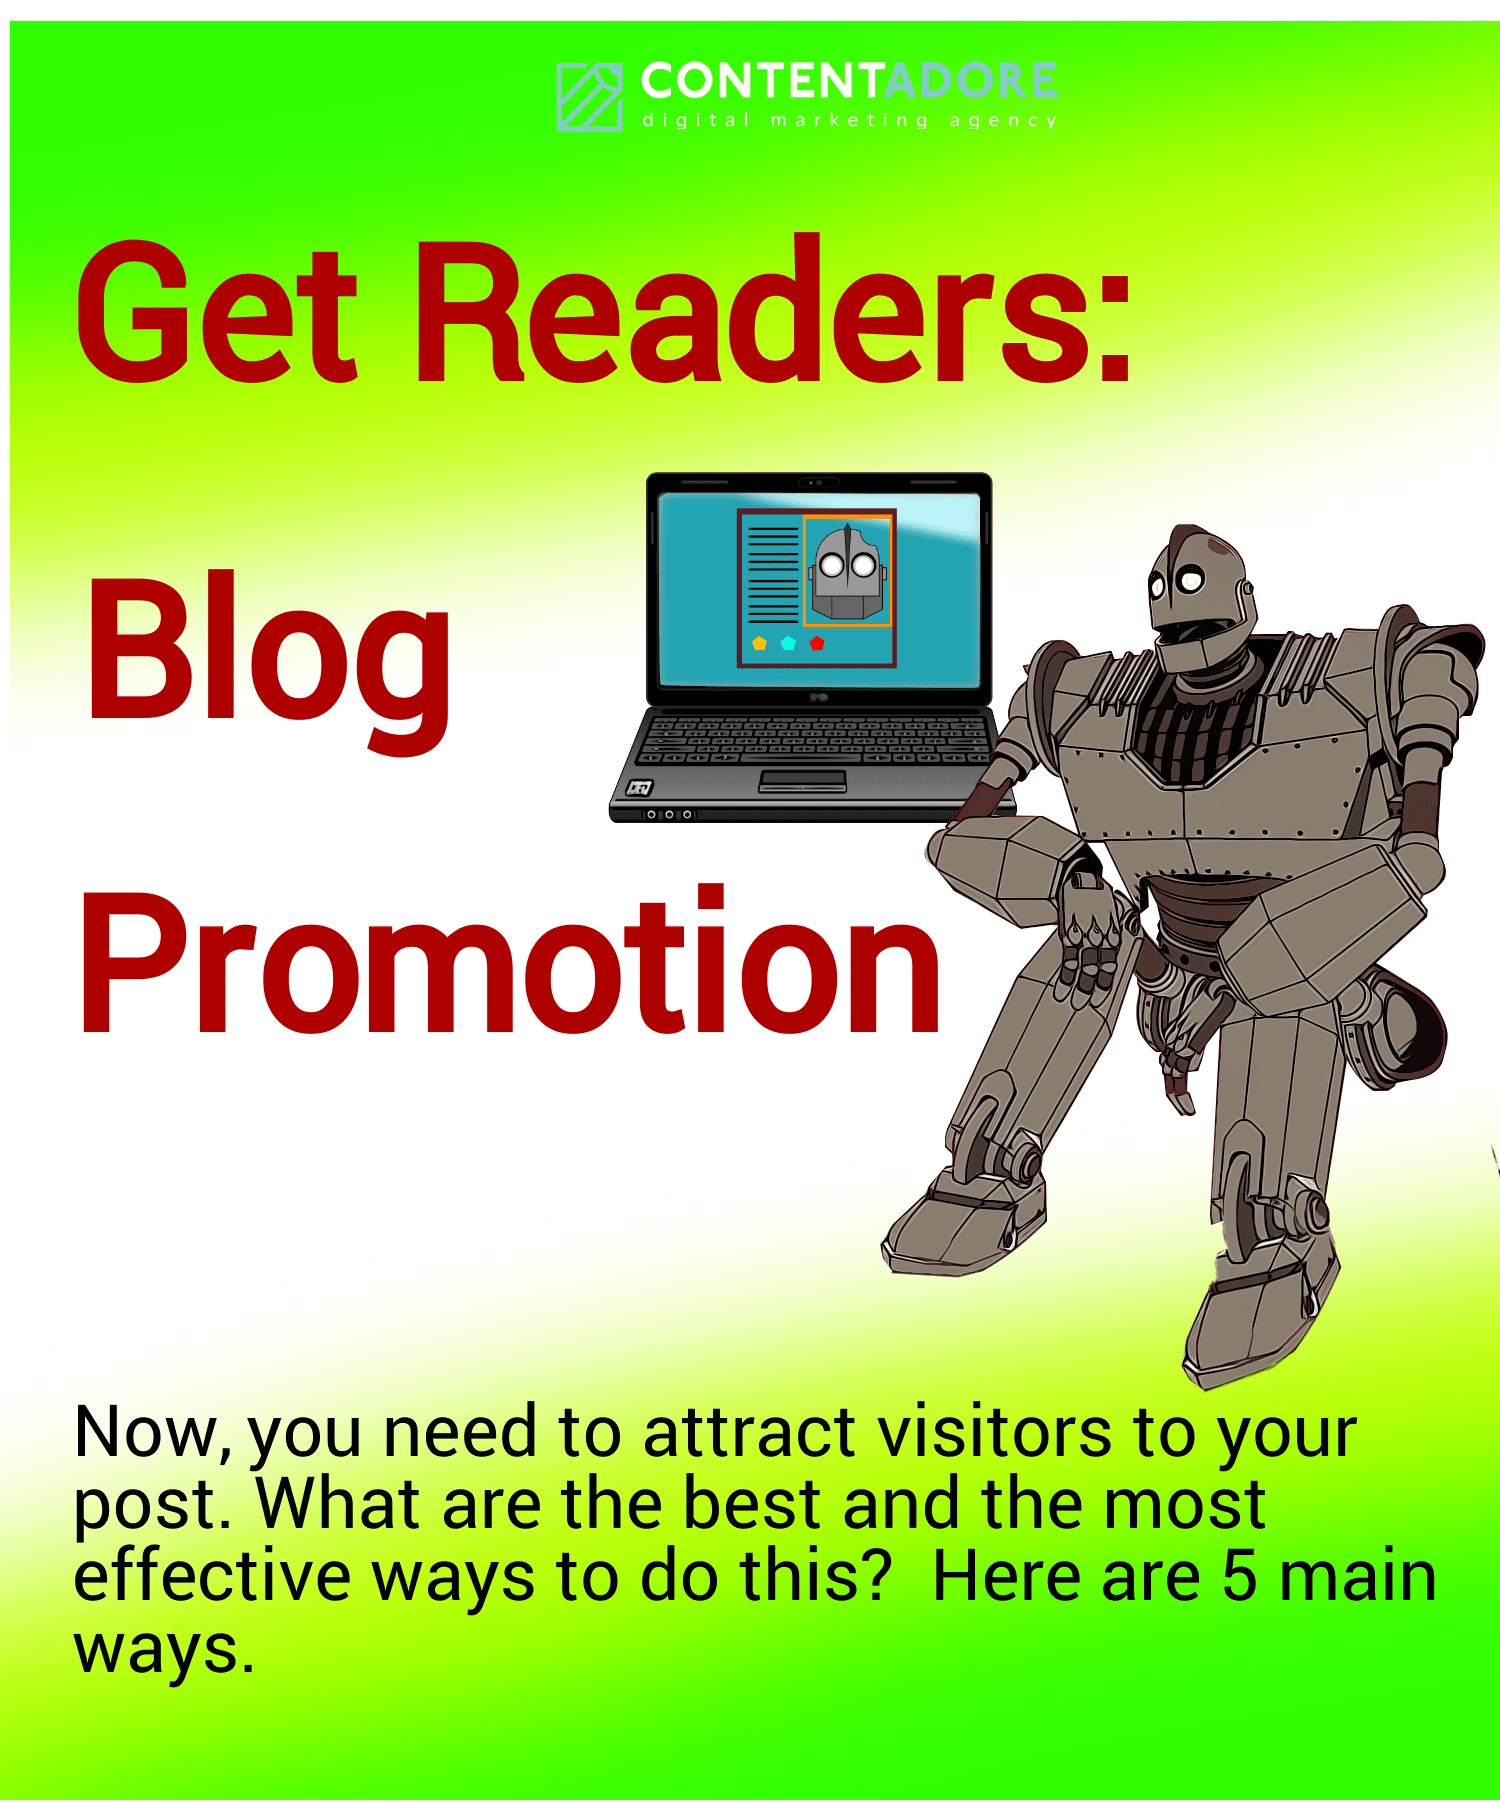 Get Readers Blog Promotion